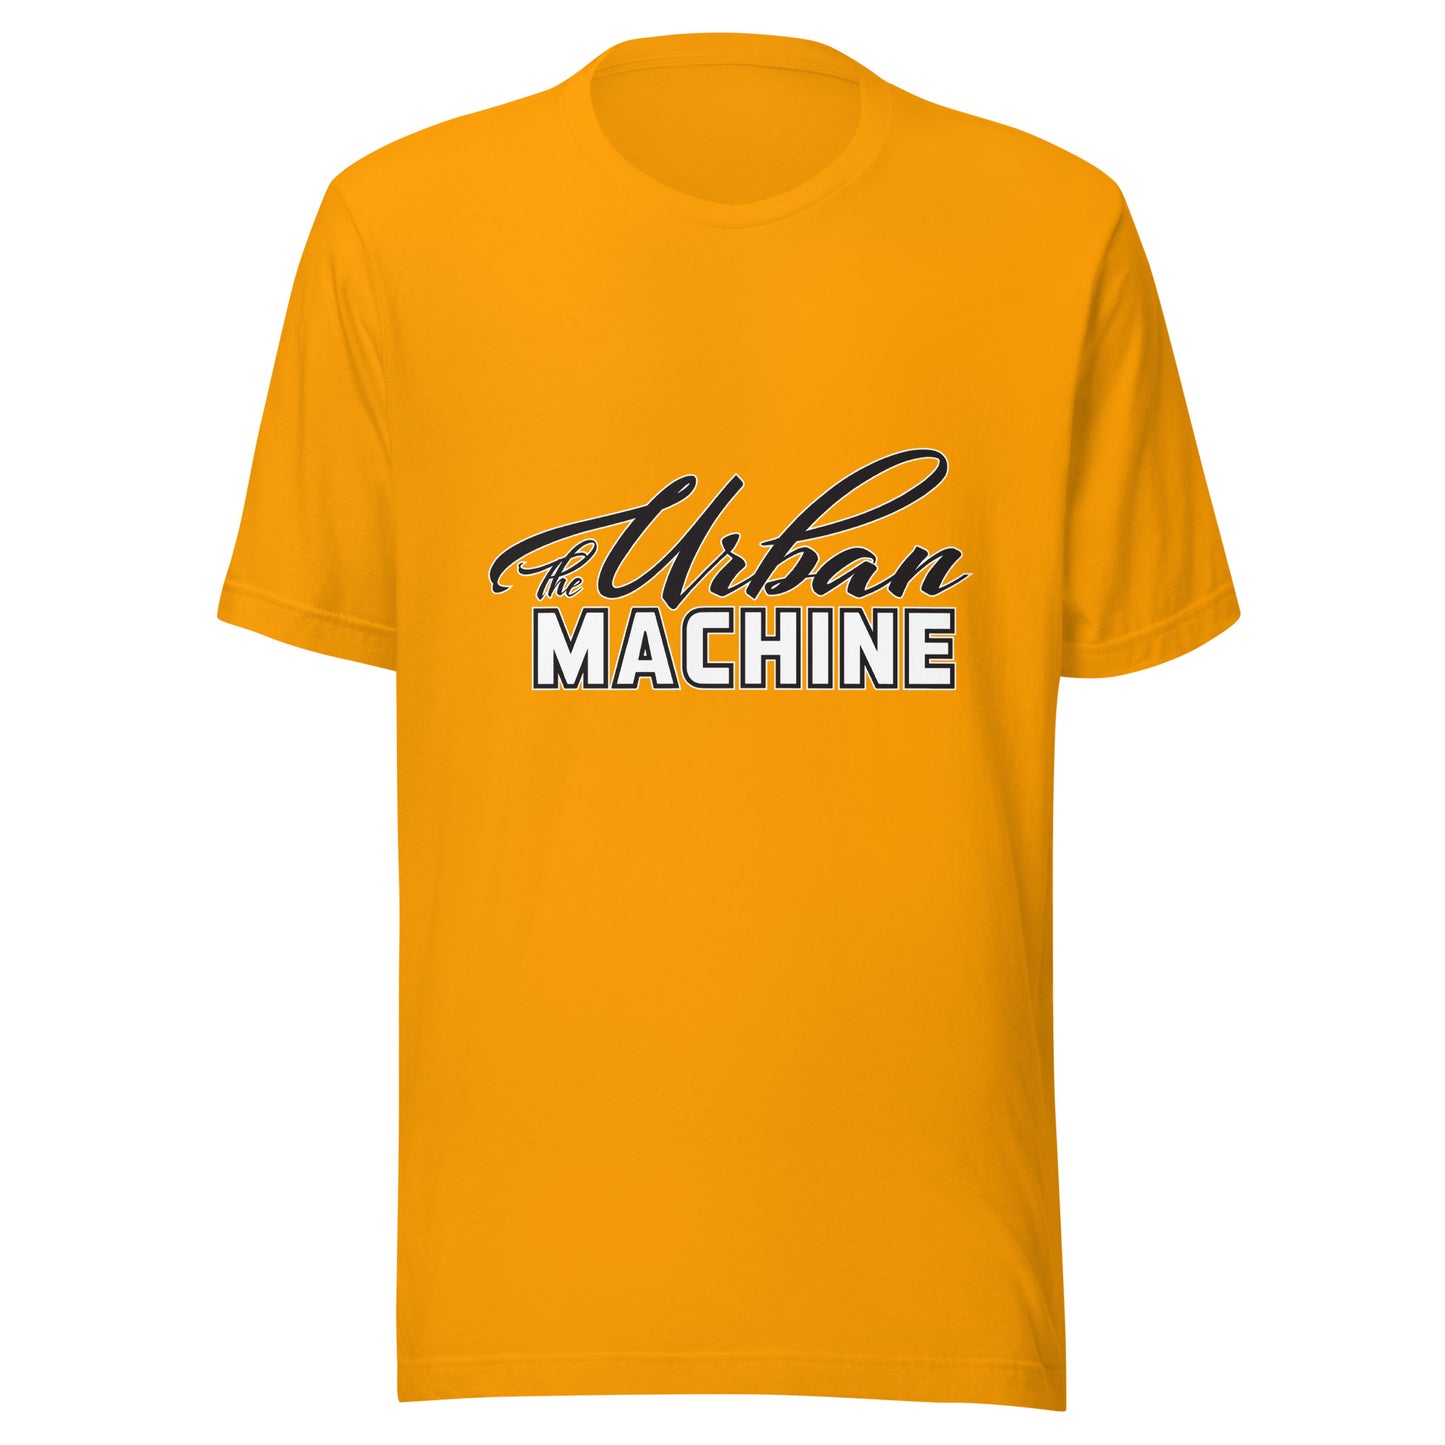 The Urban Machine Crew Neck T-Shirt